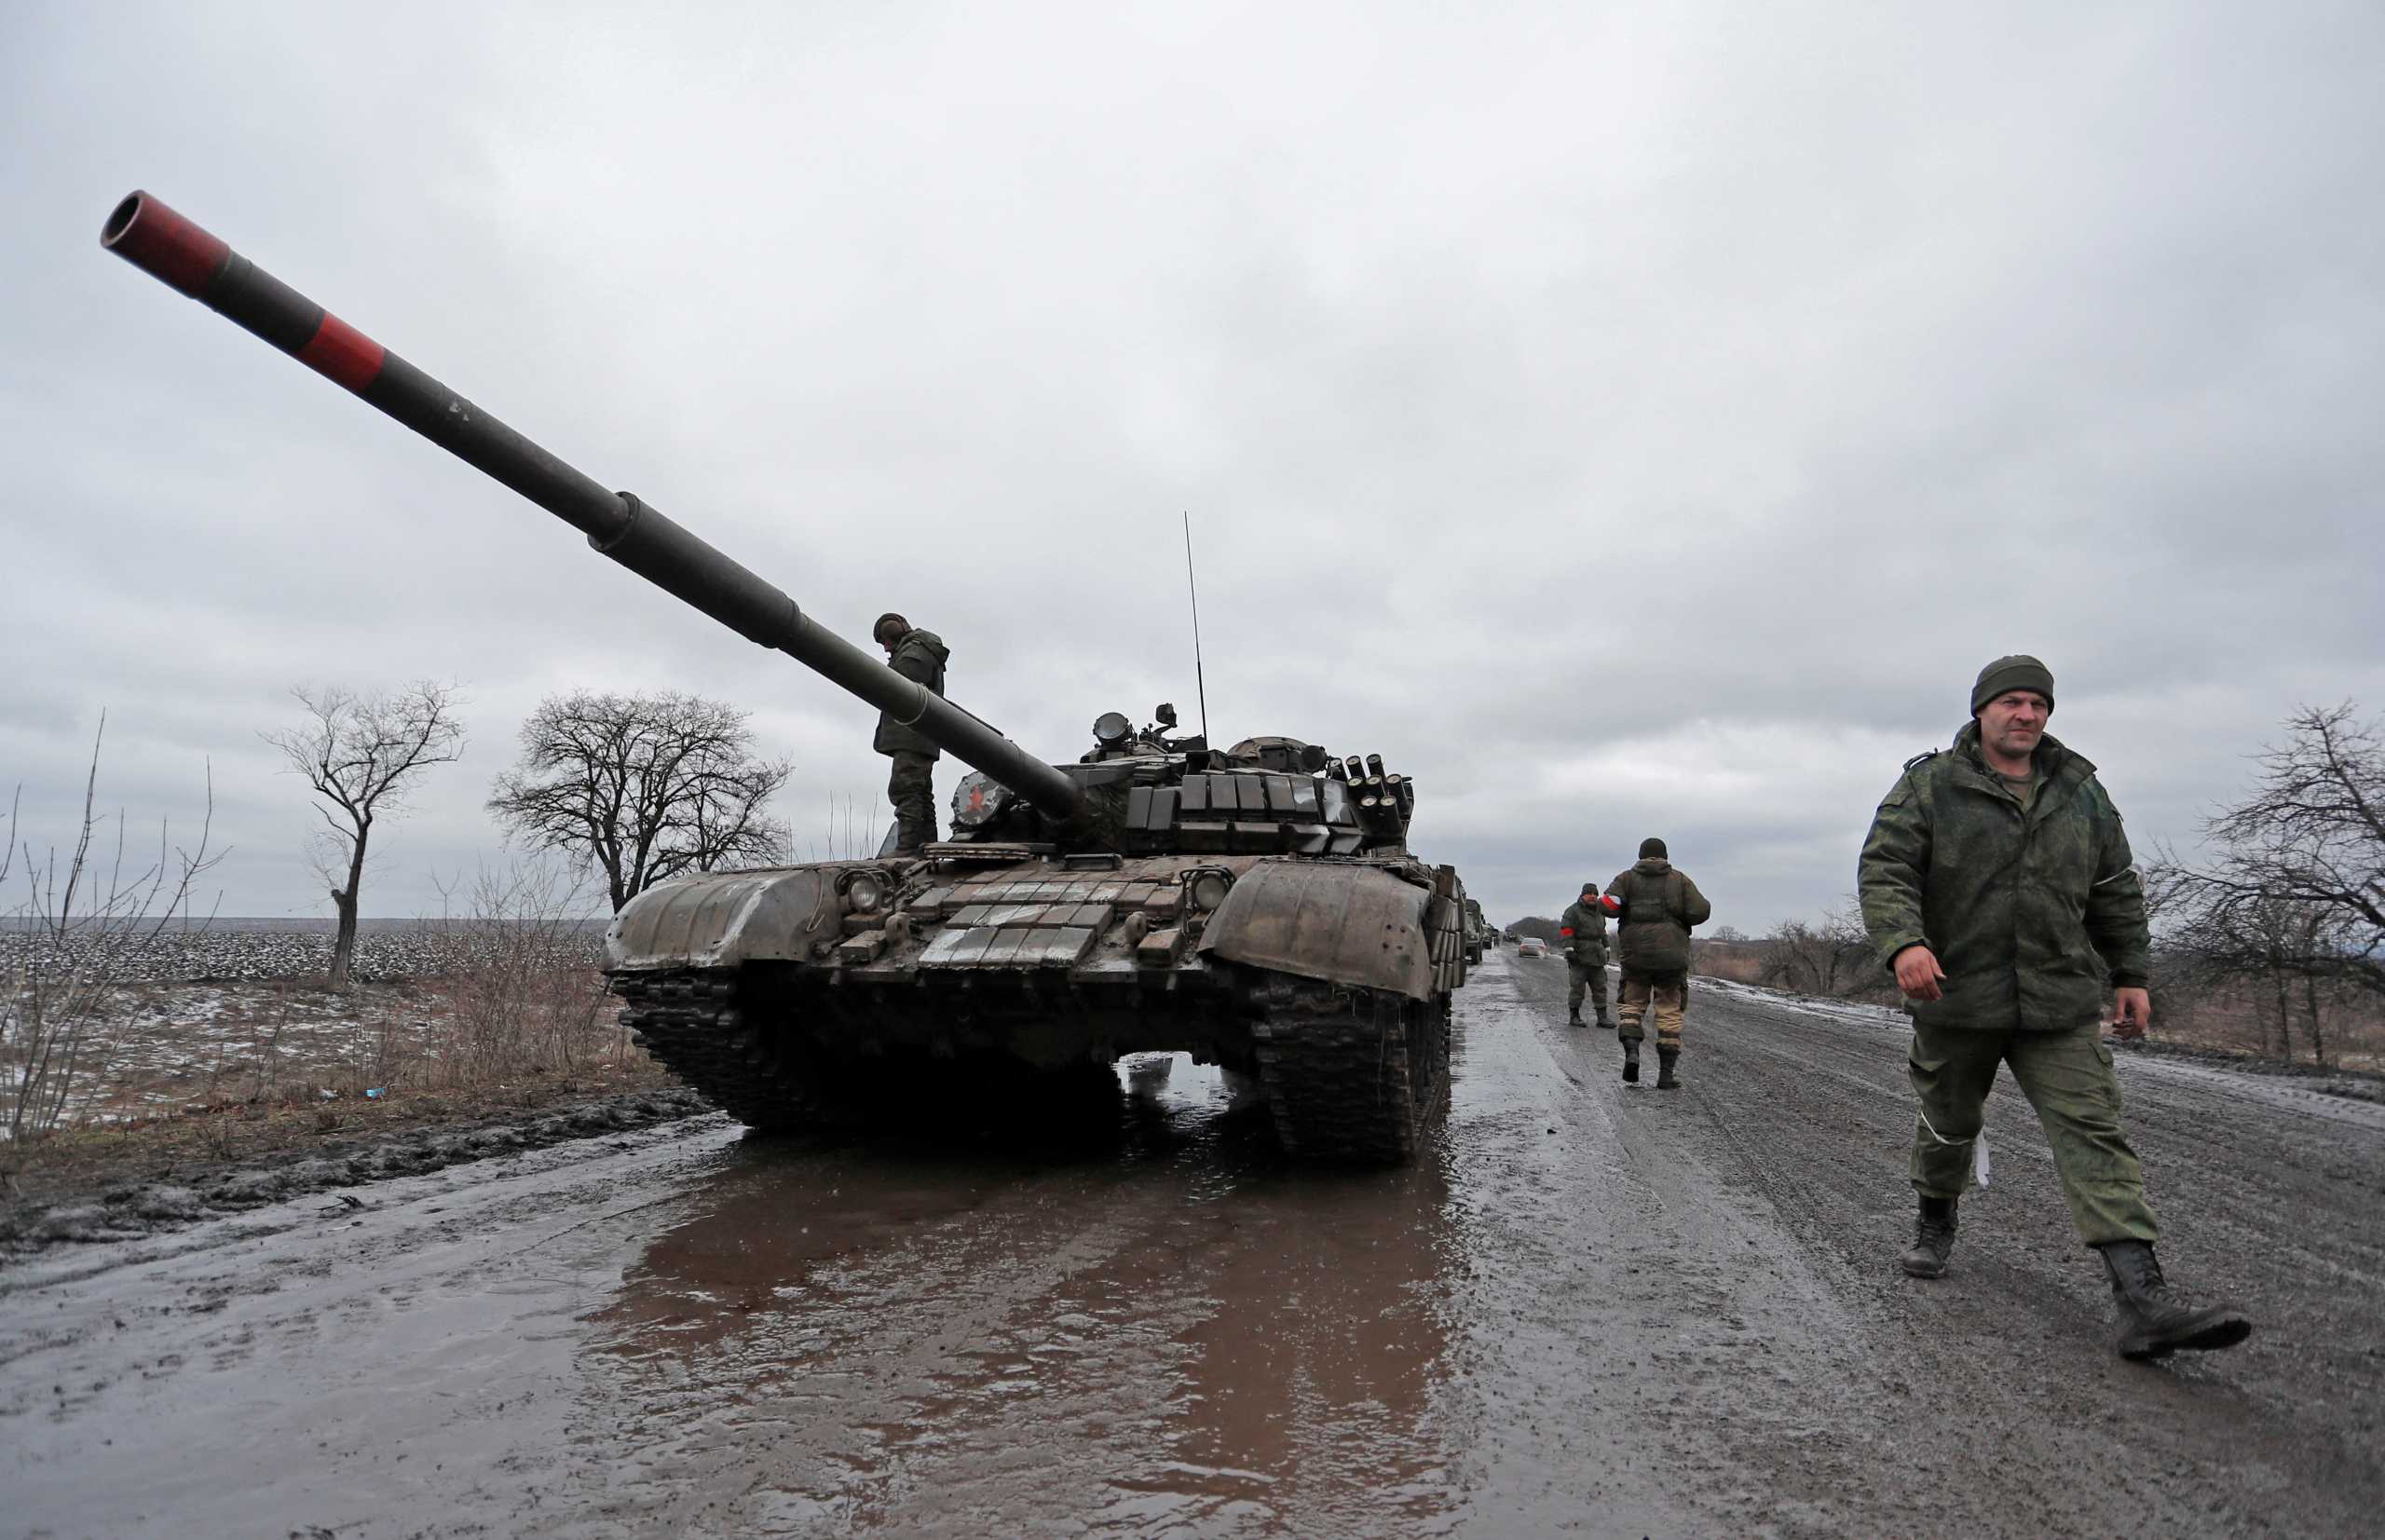 Εισβολή στην Ουκρανία LIVE οι εξελίξεις την 5η μέρα του πολέμου